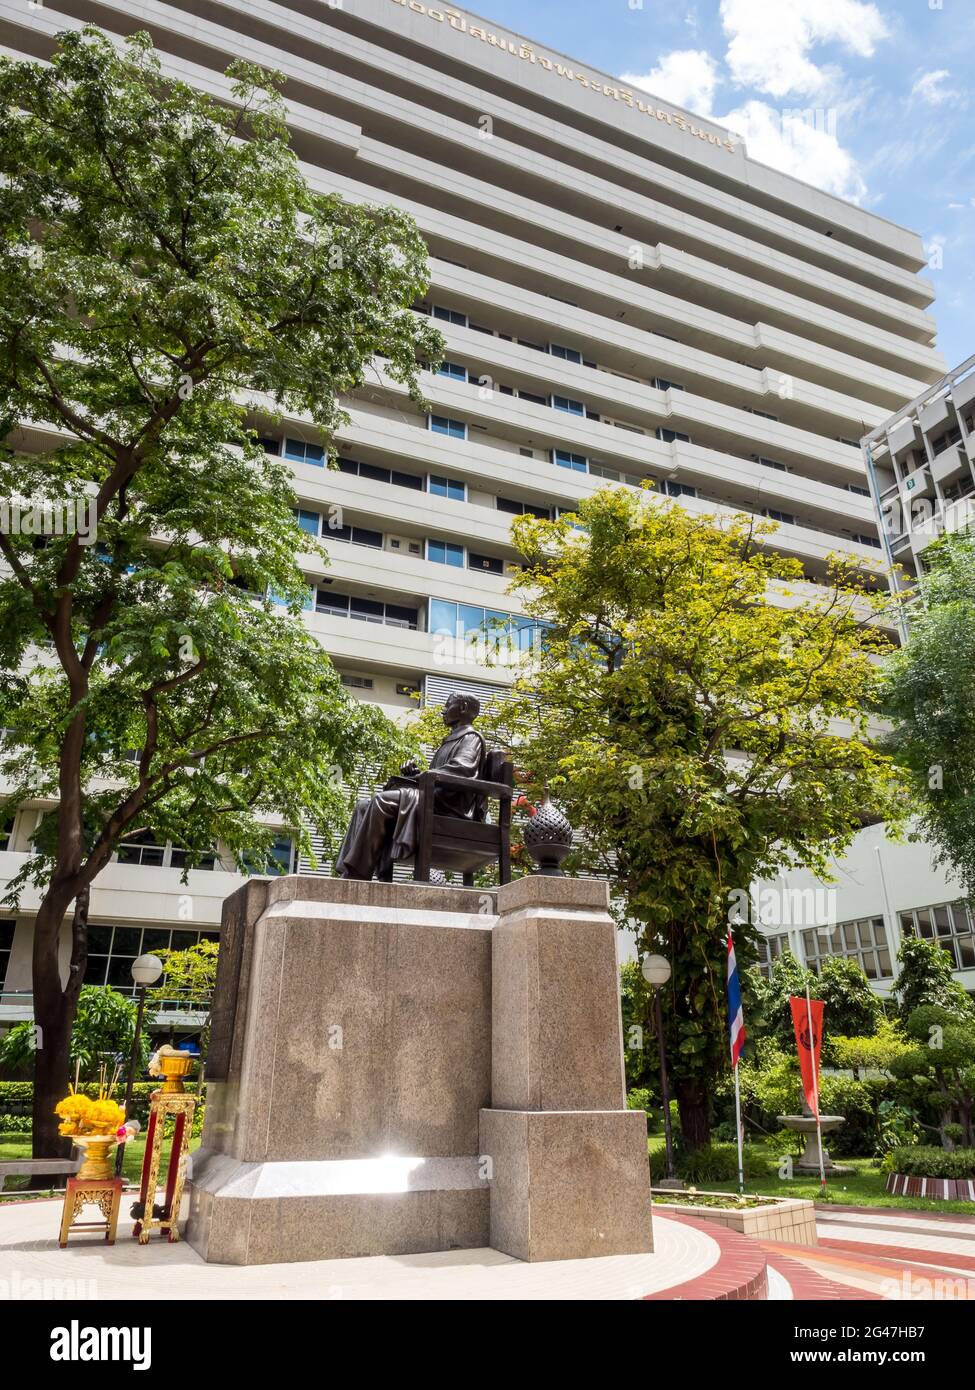 BANGKOK - 9 AGOSTO: La statua commemorativa del principe Songkhla al centro dell'ospedale Siriraj, Bangkok, Thailandia, sotto il cielo blu nuvoloso, è stata presa il 9 agosto 20 Foto Stock